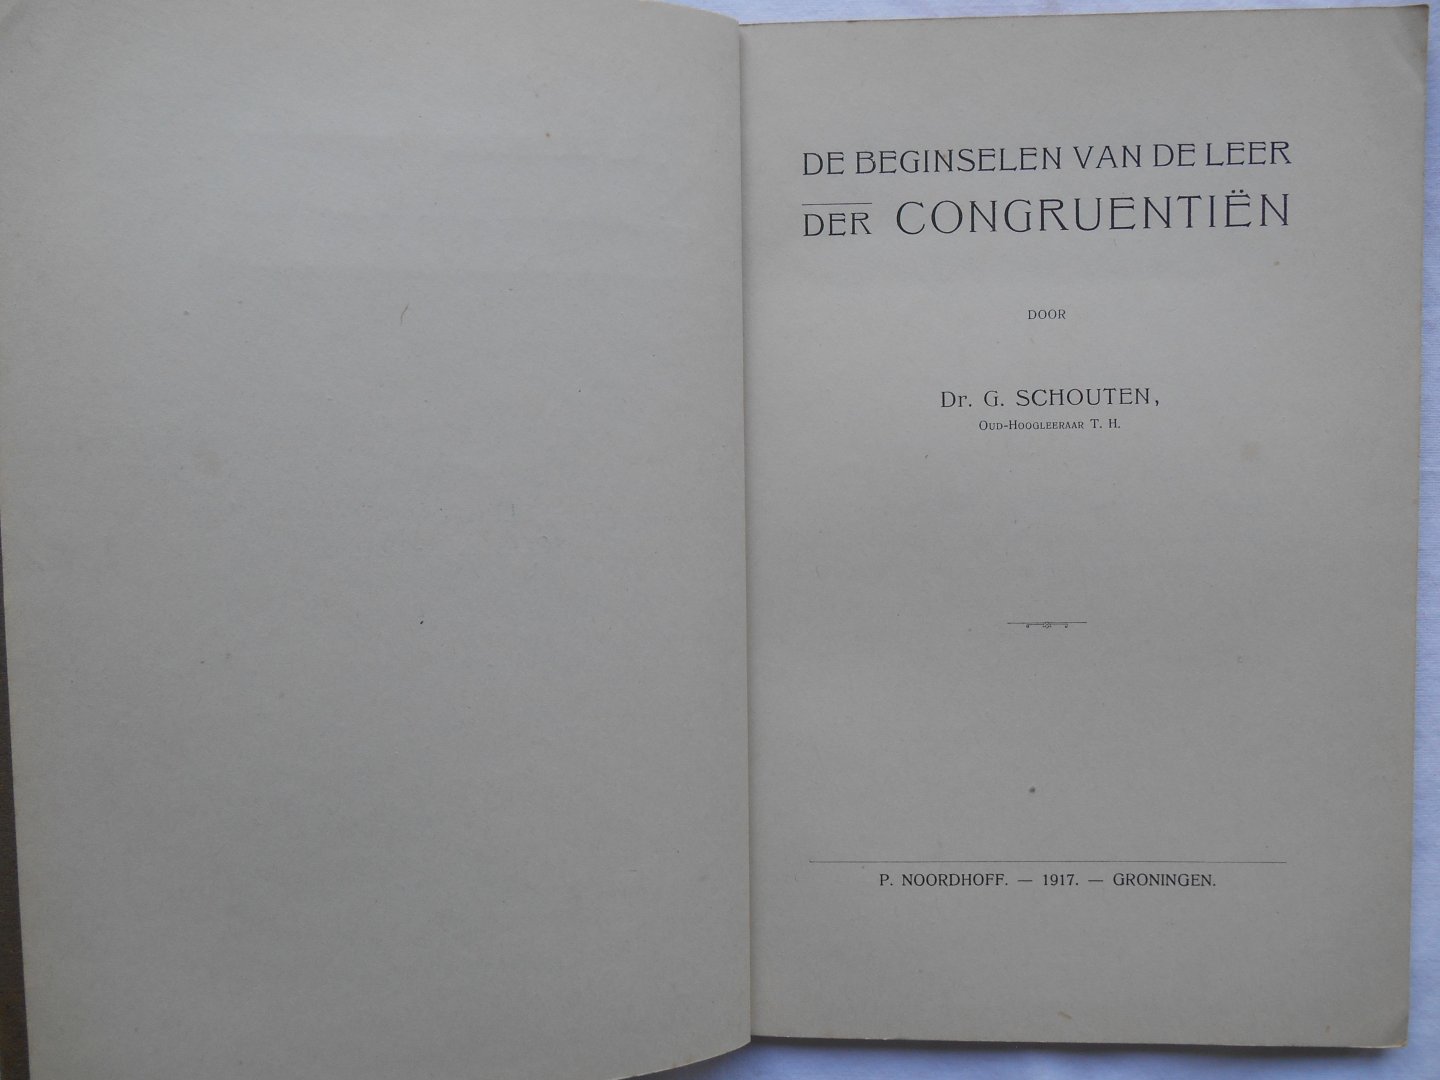 Schouten, Dr. G. - De beginselen van de leer der Congruentiën.